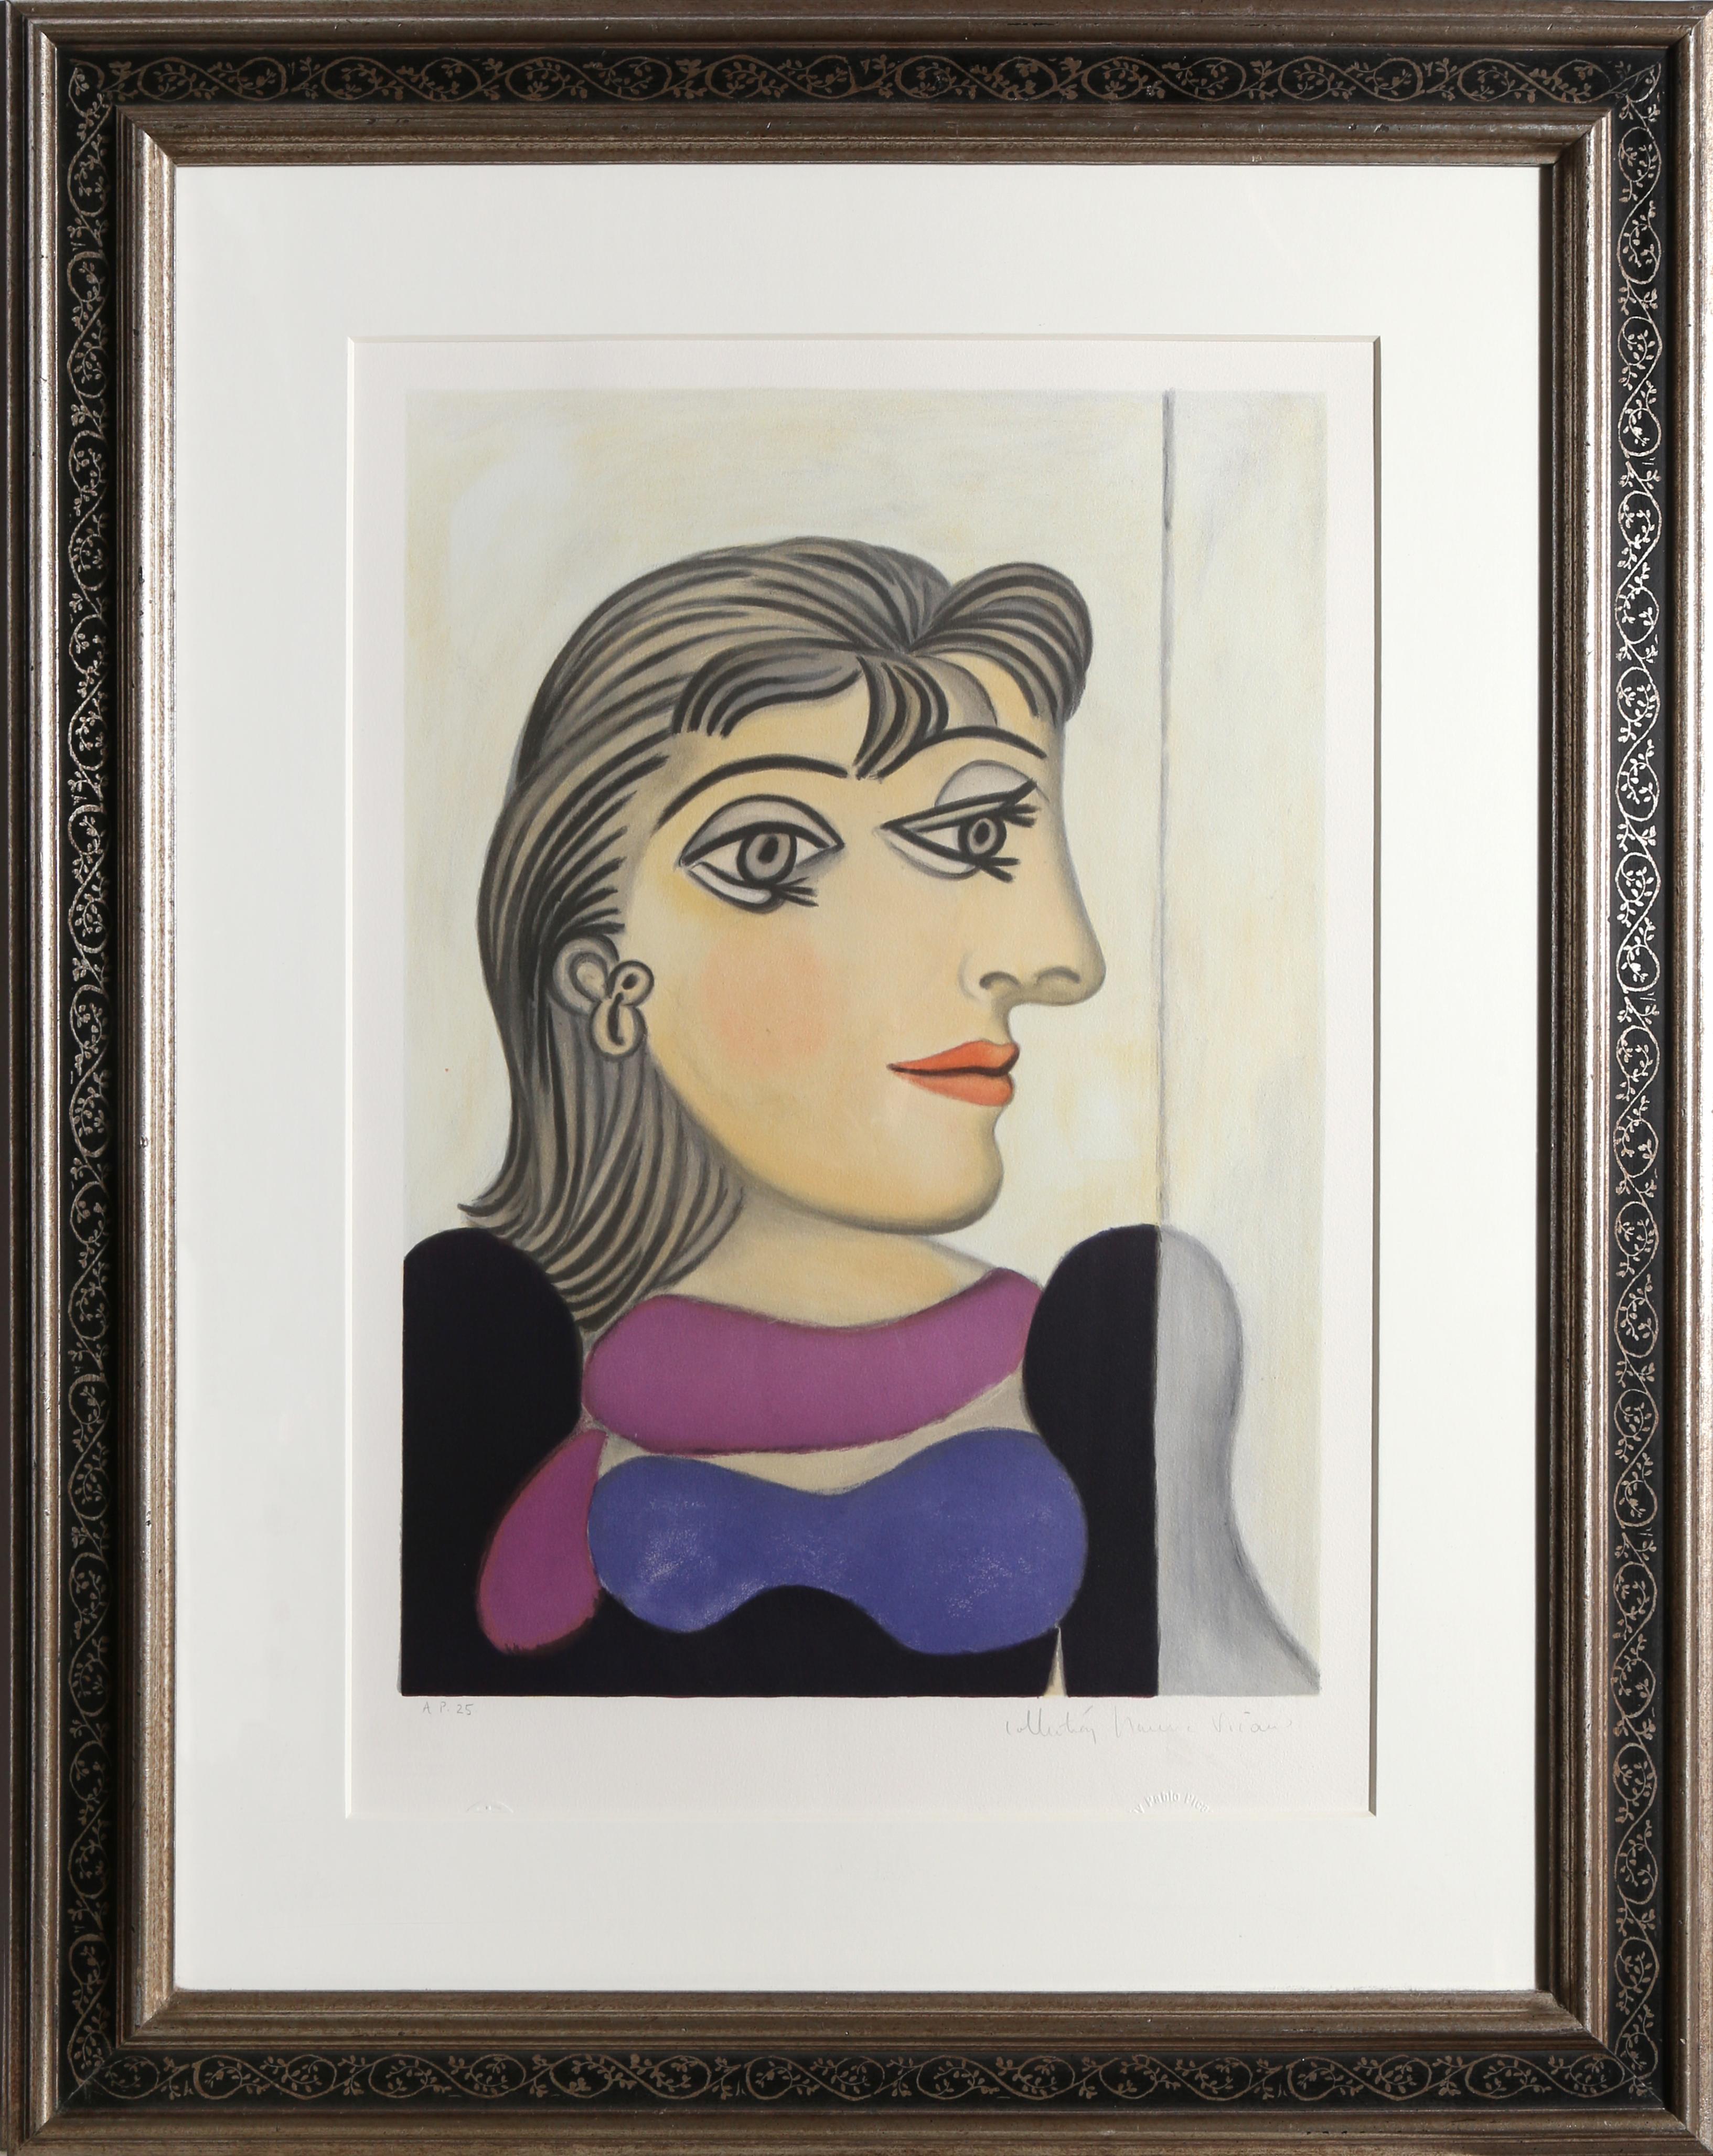 Eine Lithographie aus der Nachlasssammlung Marina Picasso nach dem Gemälde "Buste de Femme Au Foulard Mauve" von Pablo Picasso.  Das Originalgemälde wurde 1937 fertiggestellt. In den 1970er Jahren, nach Picassos Tod, autorisierte Marina Picasso,